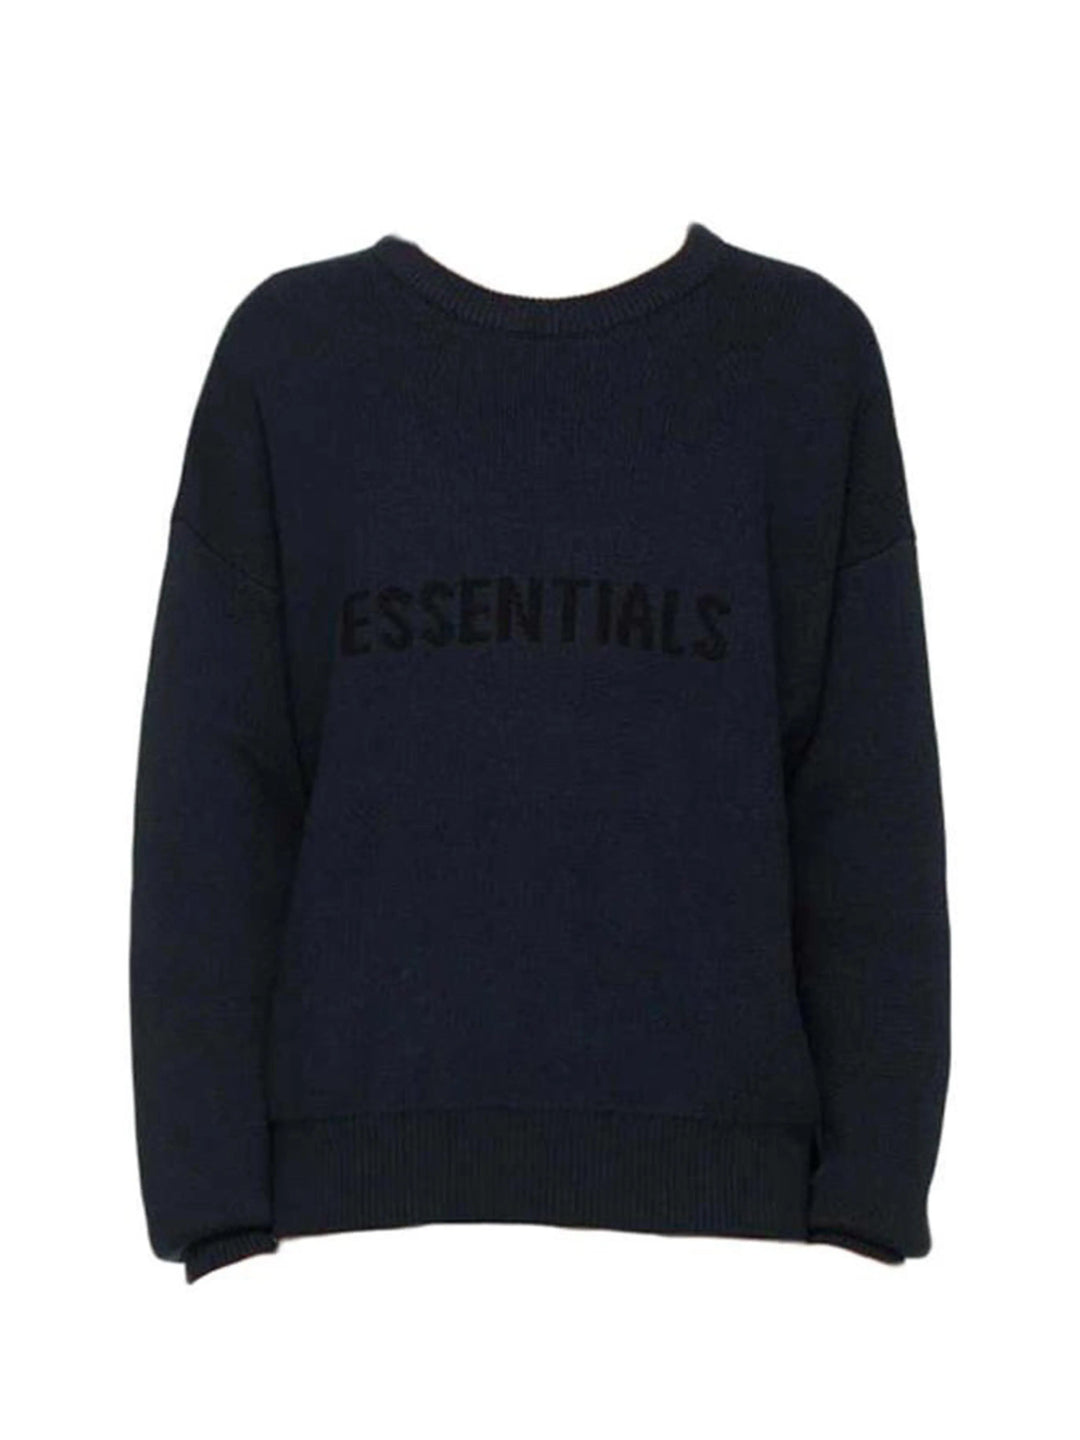 Fear Of God Essentials x Ssense Knit Sweater Dark Navy [FW20] Prior